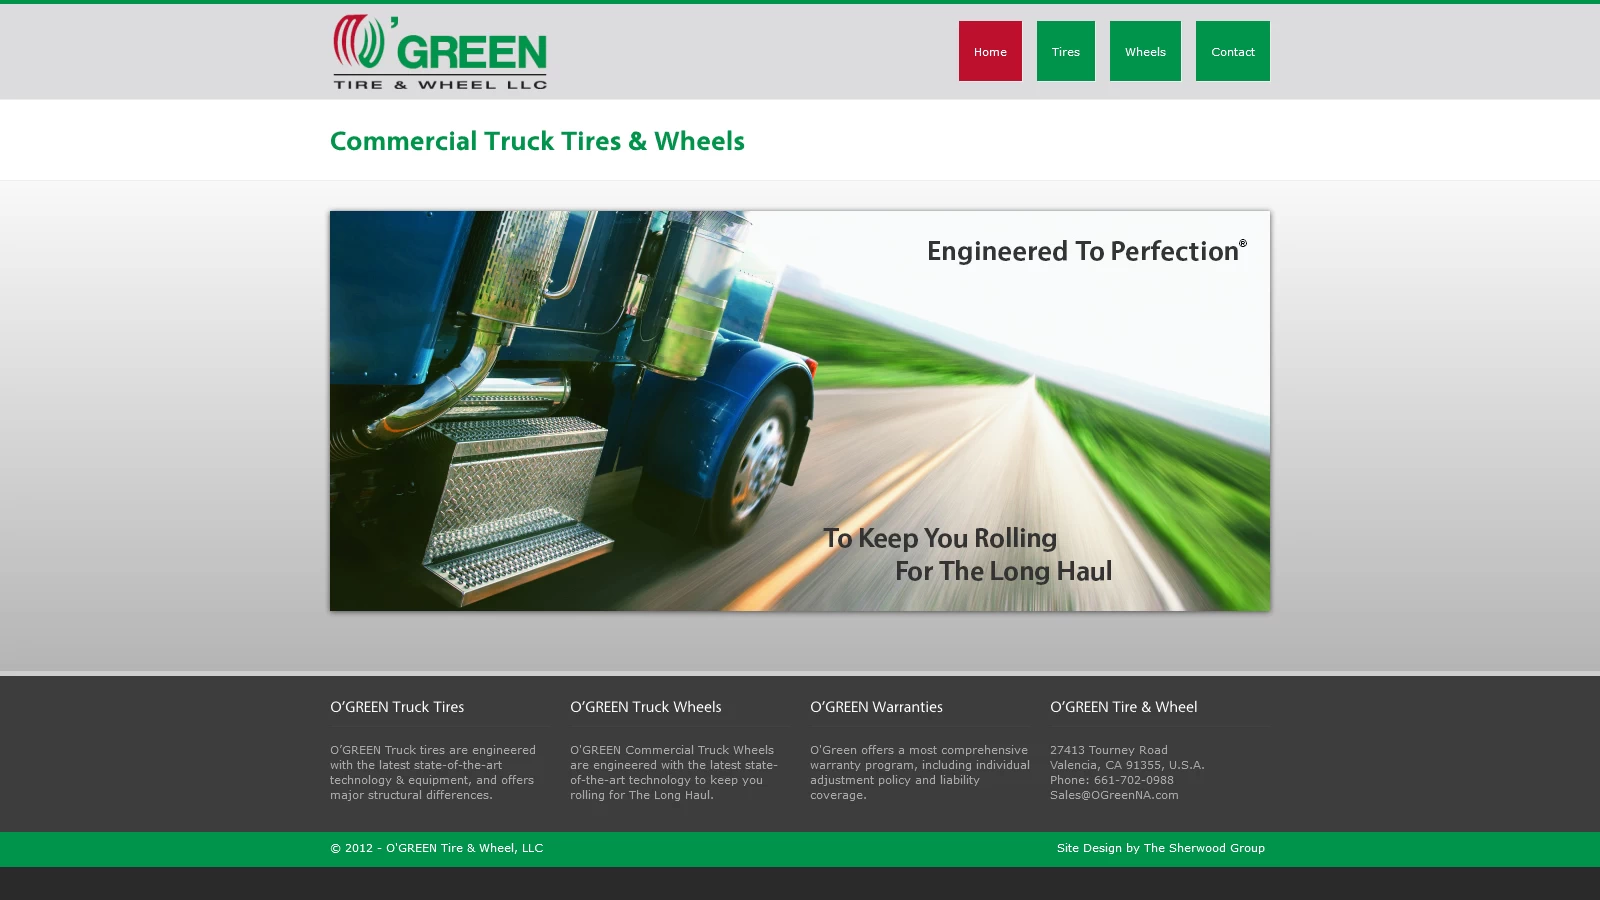 O’Green Tire & Wheel LLC